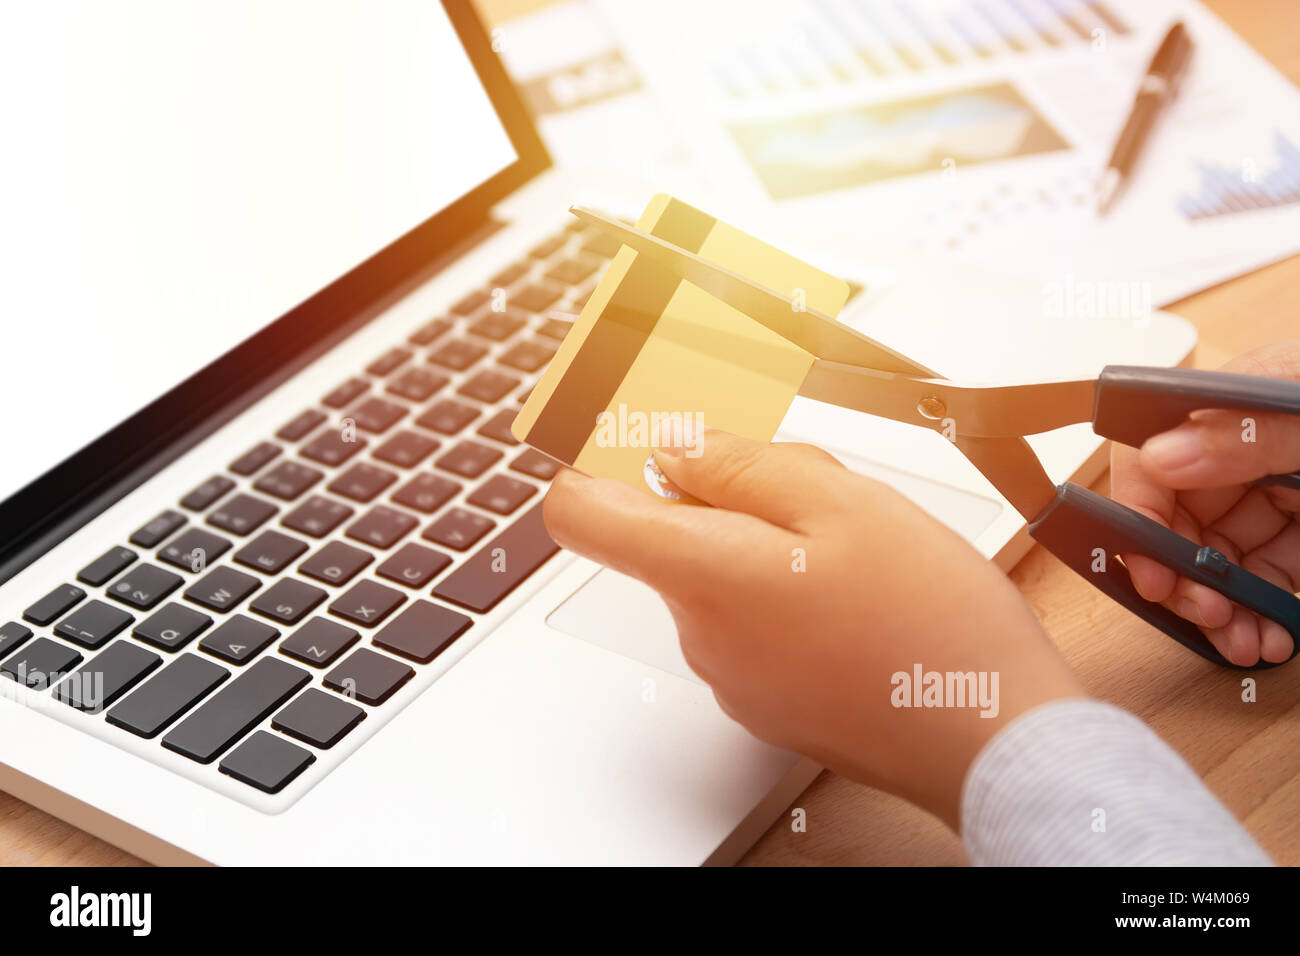 Frau verwenden Sie eine Schere Kreditkarten in der Hand vor Computer laptop zu schneiden Stockfoto